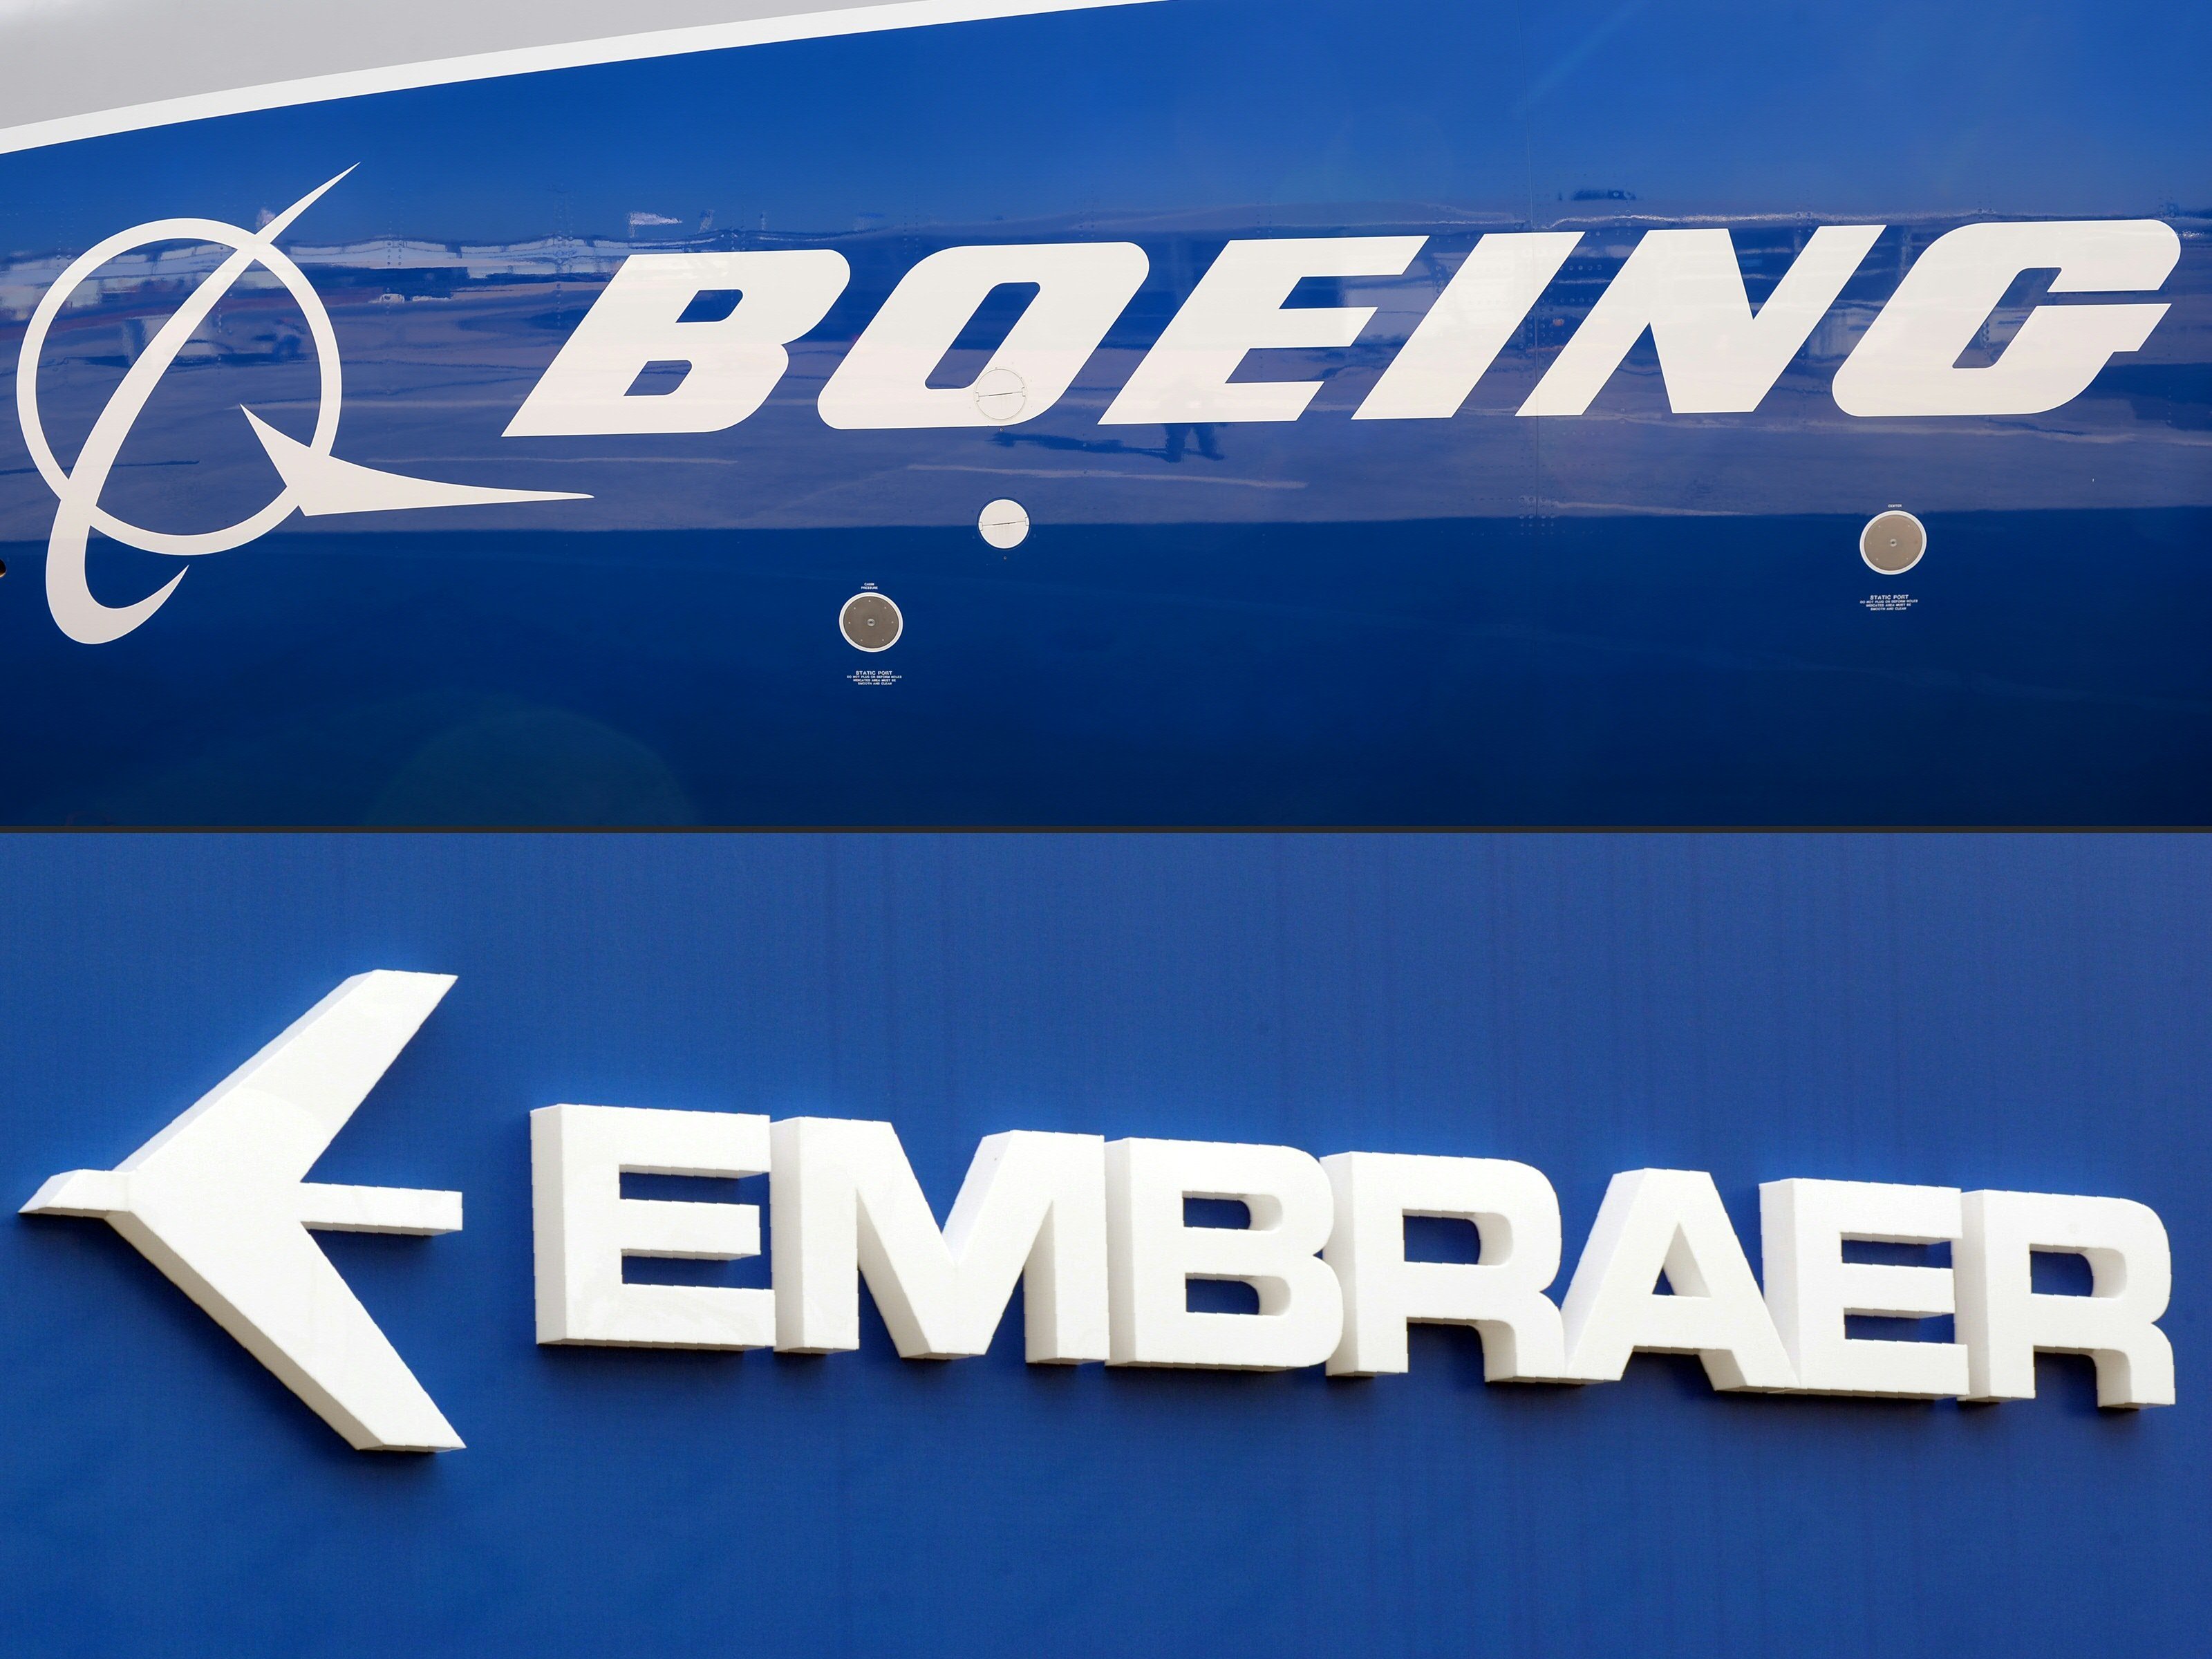 Boeing e Embraer devem estabelecer parceria estratégica para acelerar crescimento aeroespacial global